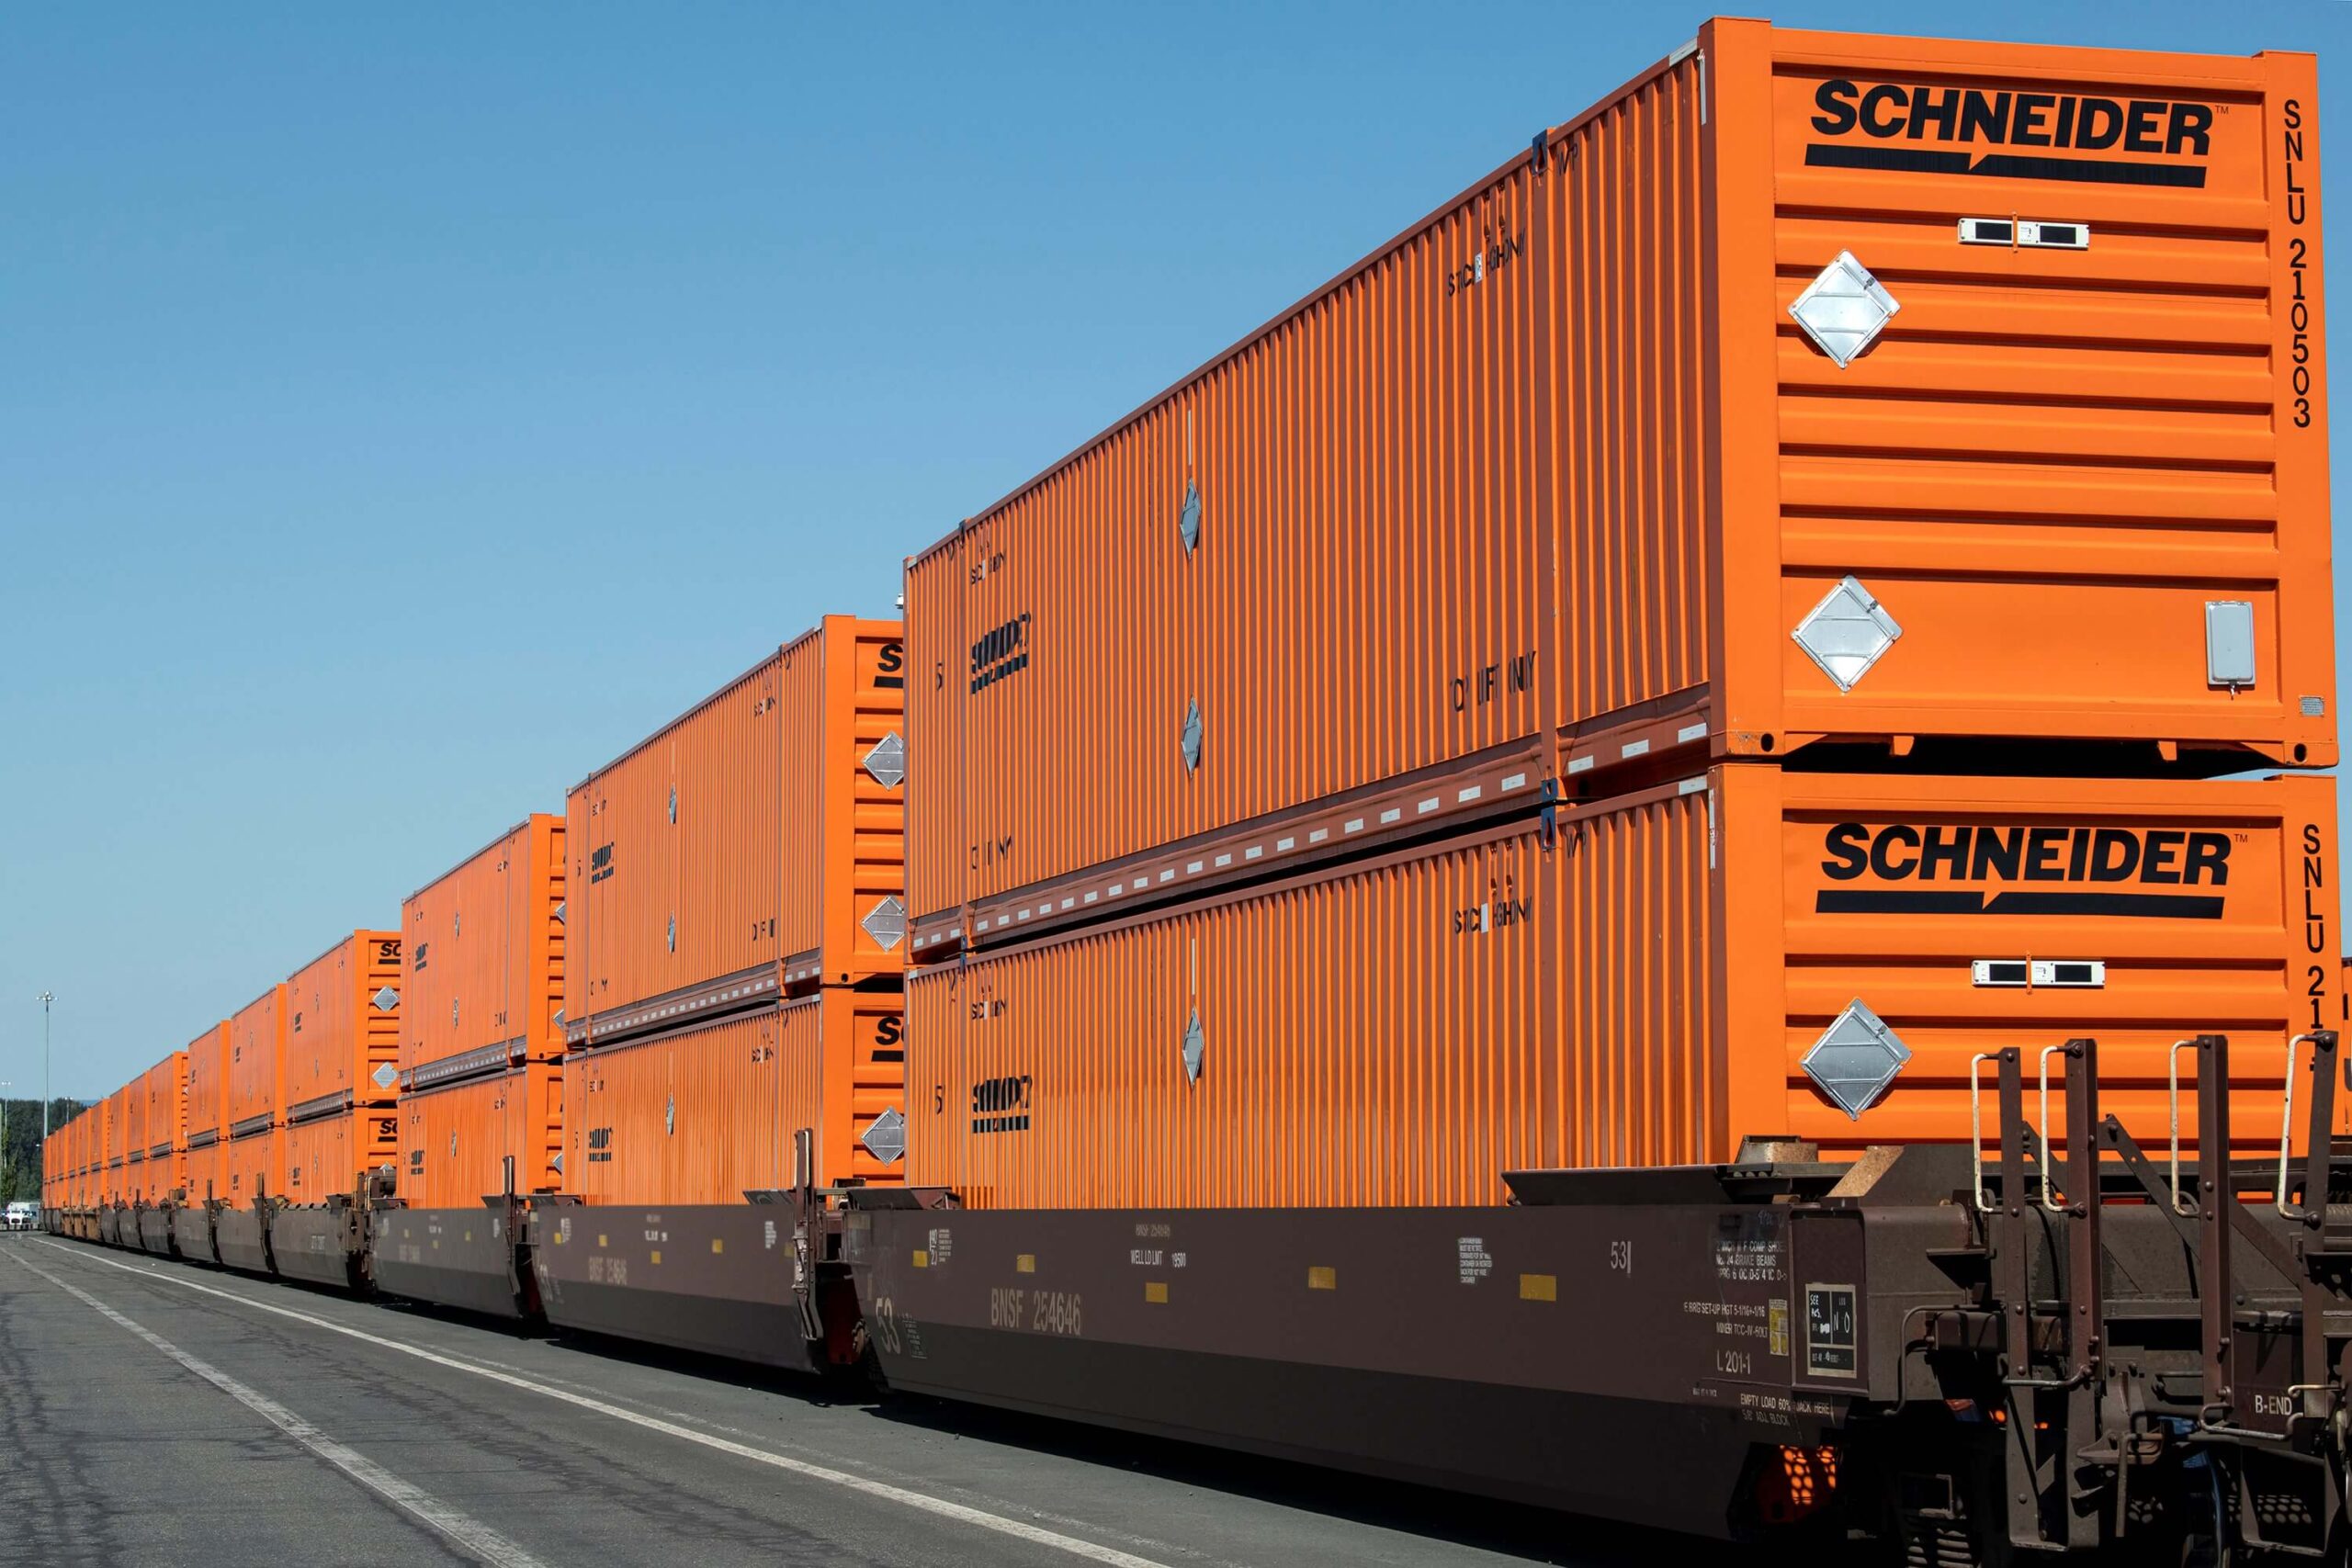 Schneider intermodal freight transport